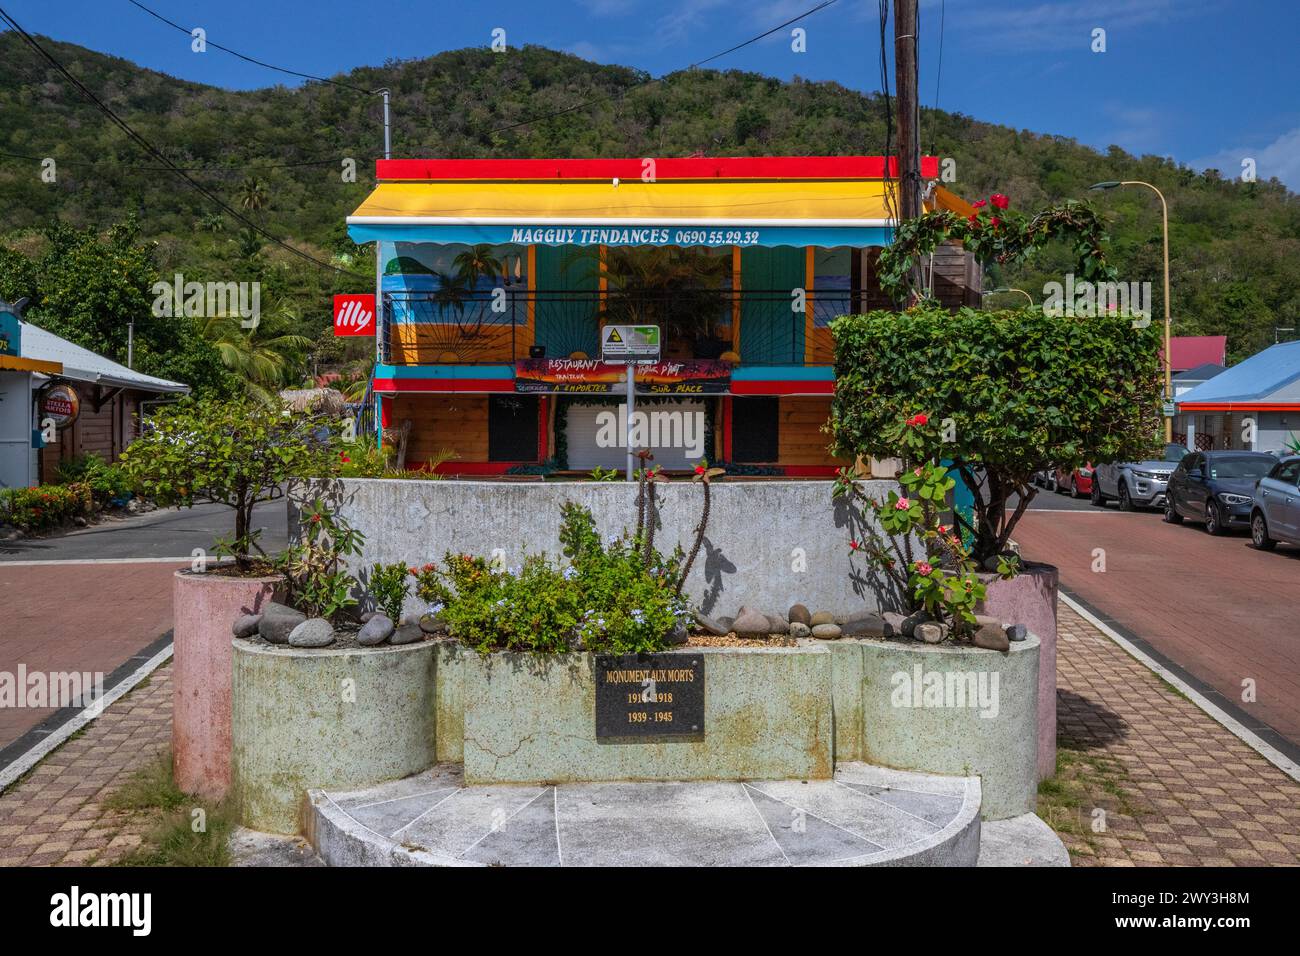 Deshaies, storico edificio caraibico in legno di una strada a Guadalupa, Caraibi, Antille francesi Foto Stock